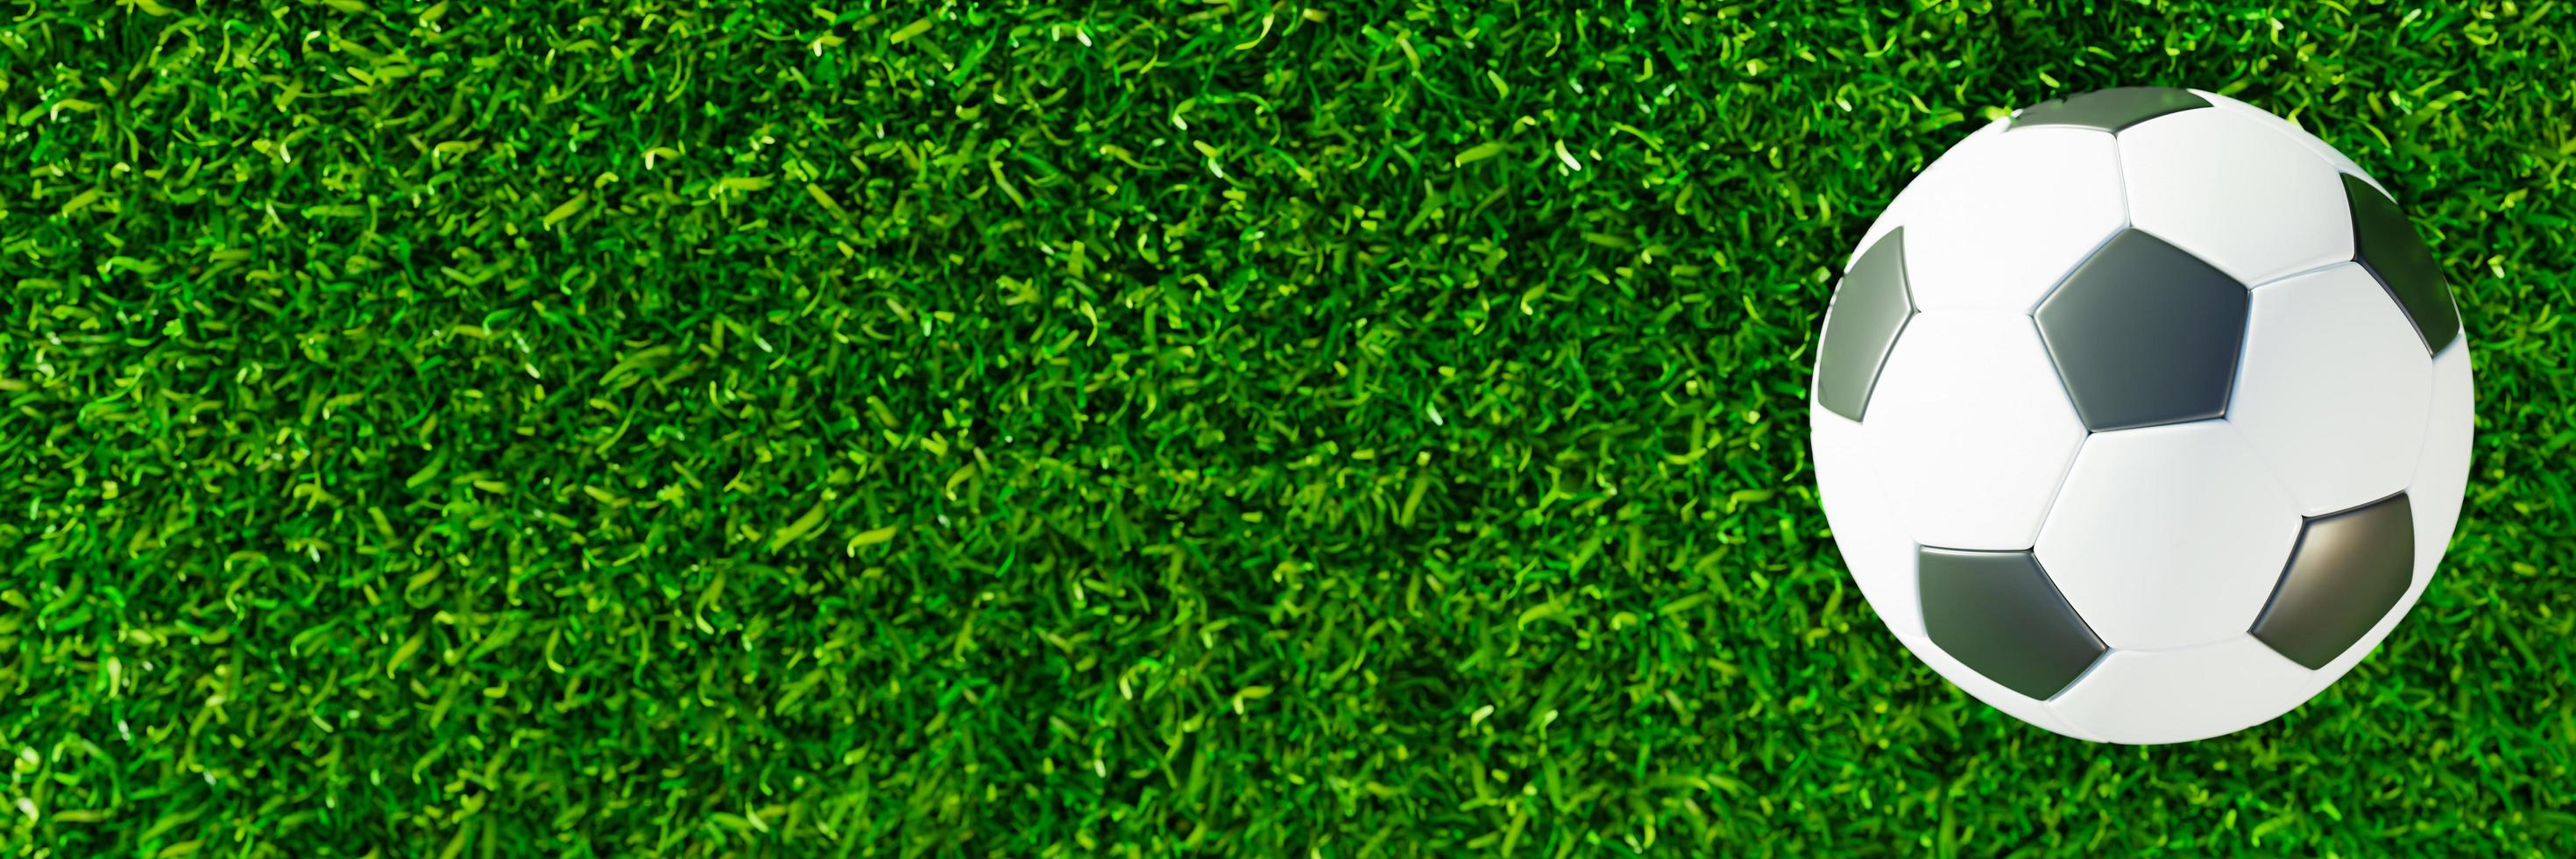 ovanifrån realistisk fotboll eller fotboll boll grundläggande mönster på grönt gräsplan med solljus och solsken. 3D-stil och renderingskoncept för spel. använd för bakgrund eller tapet. foto